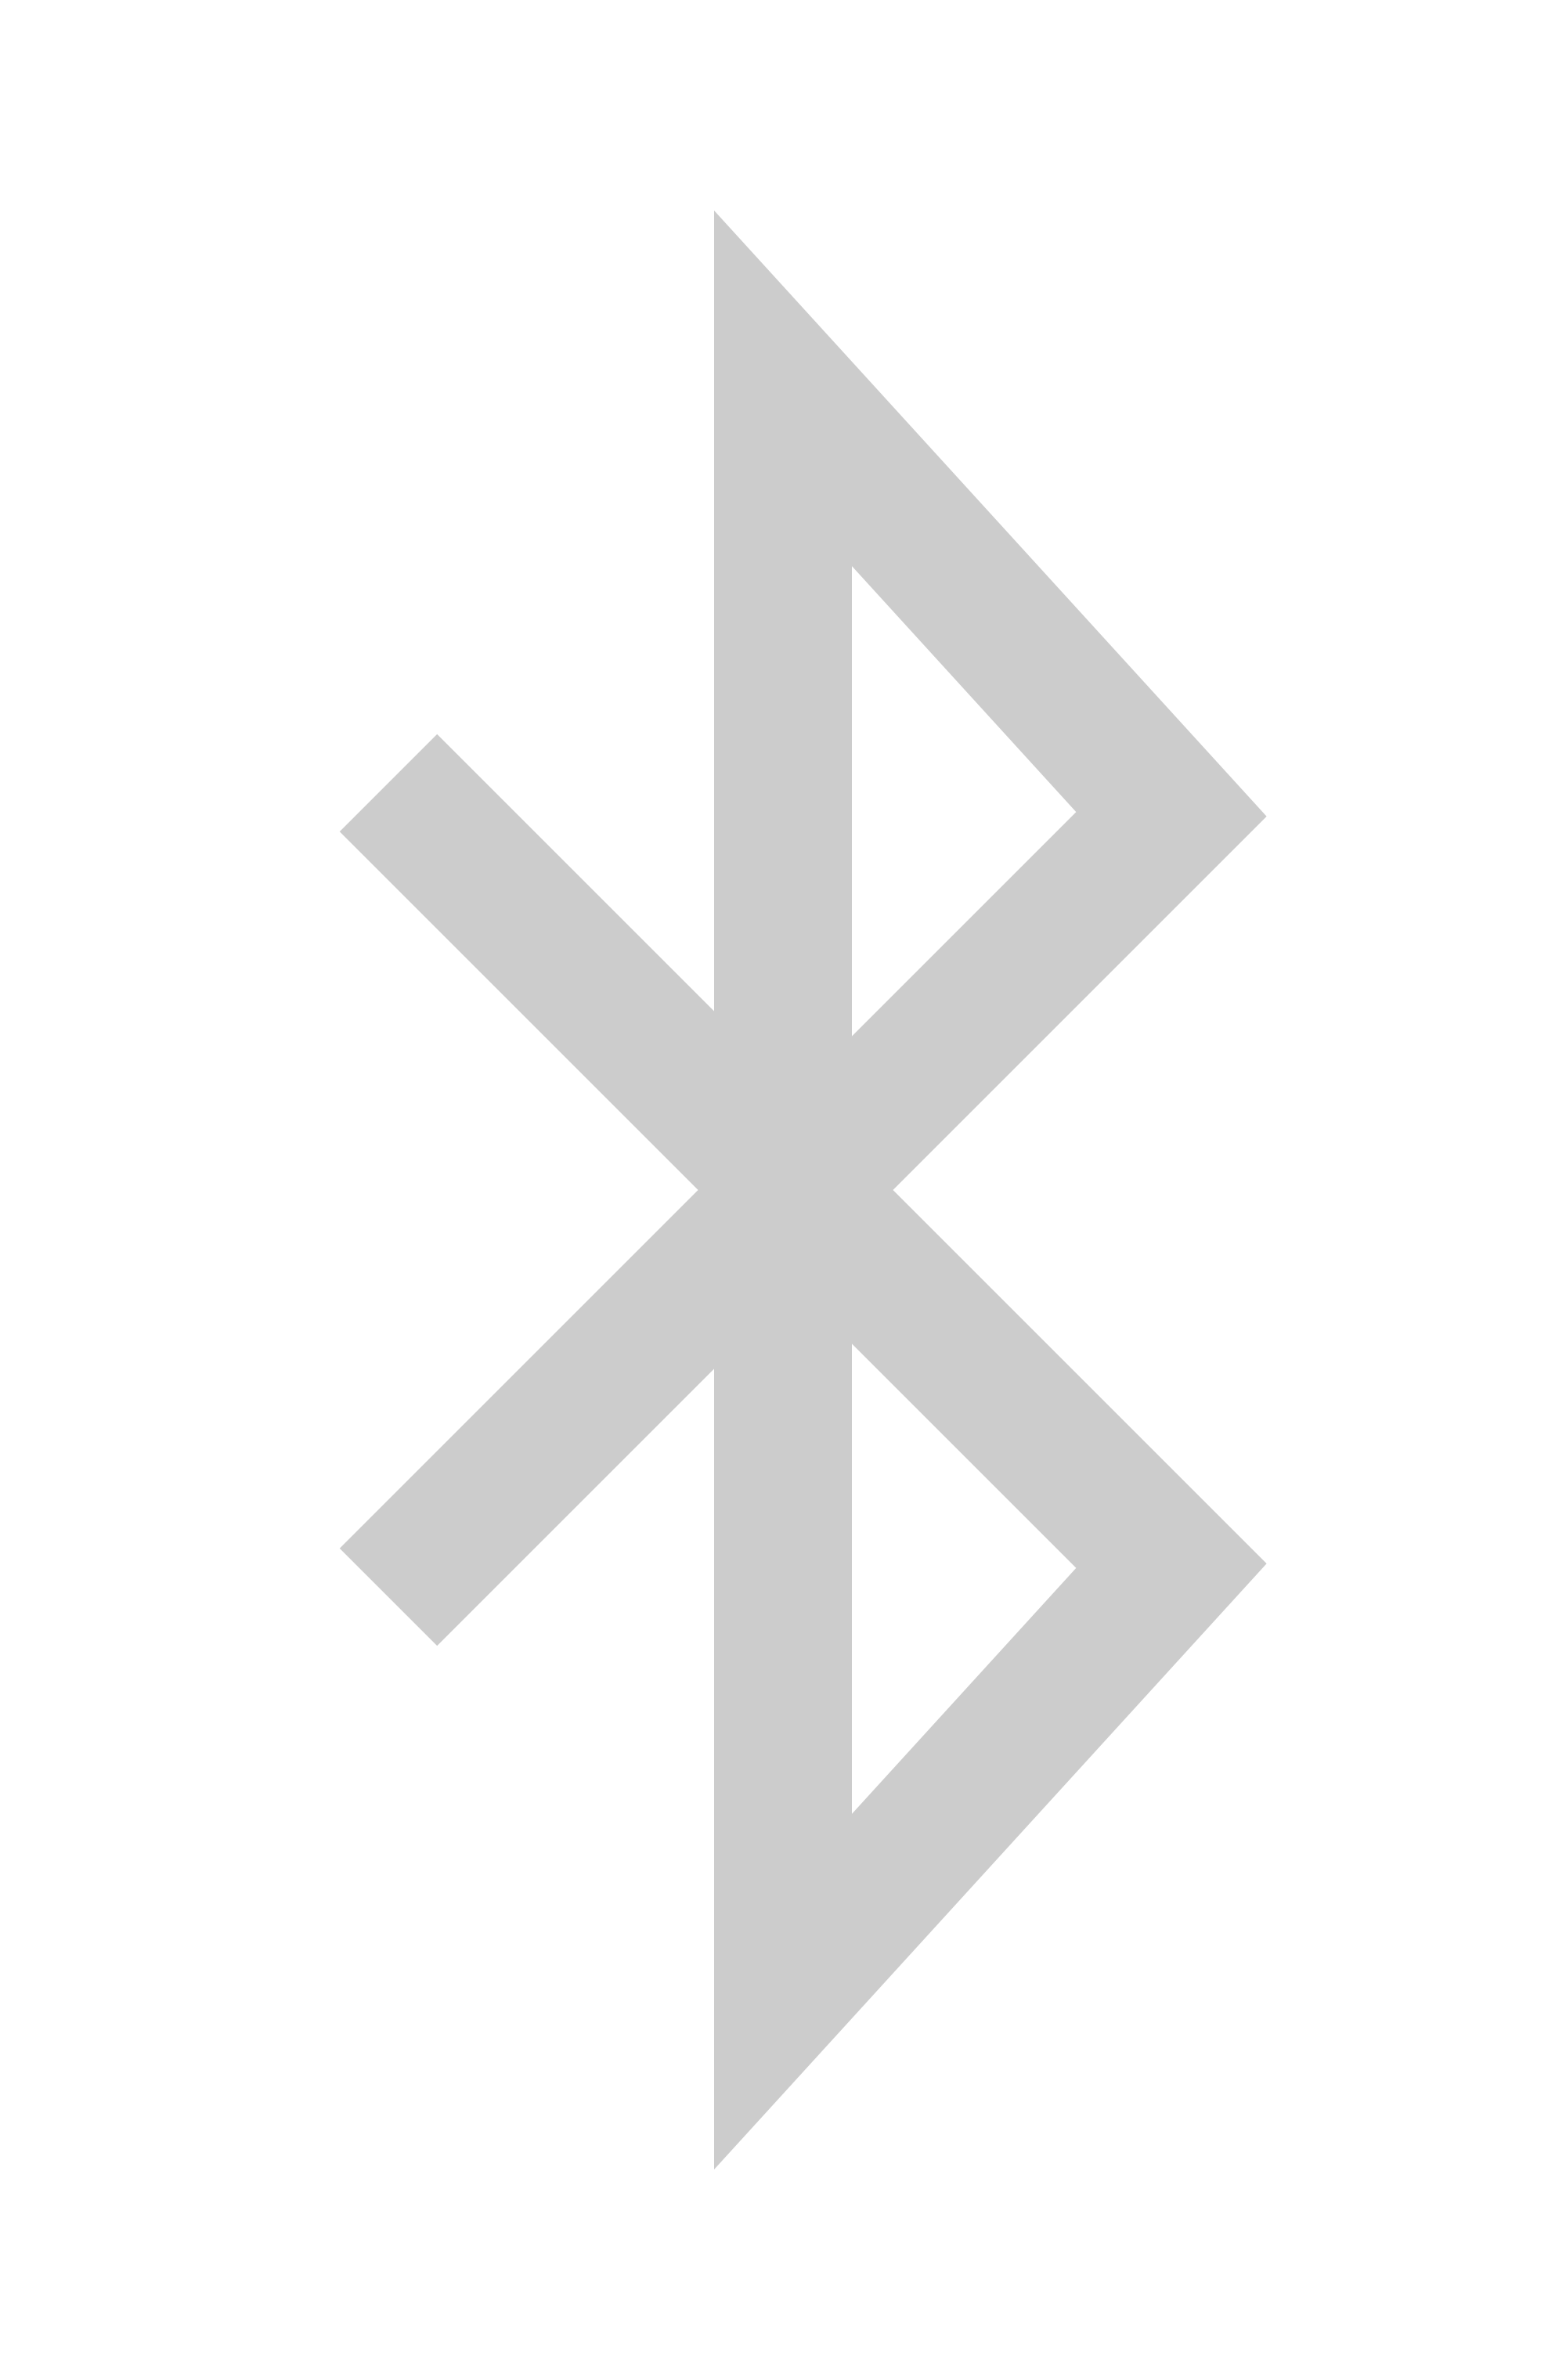 Free white bluetooth icon - Download white bluetooth icon